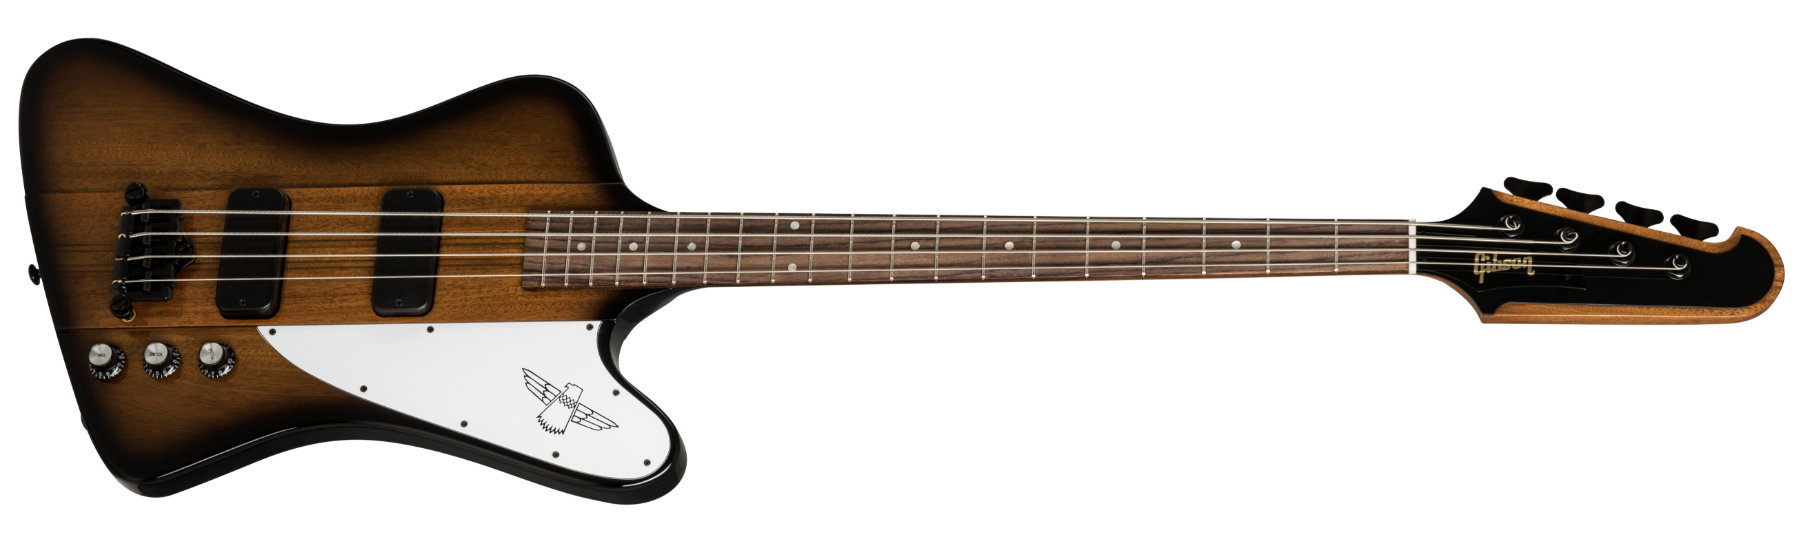 Gibson USA 2019 Thunderbird Bass, Vintage Sunburst